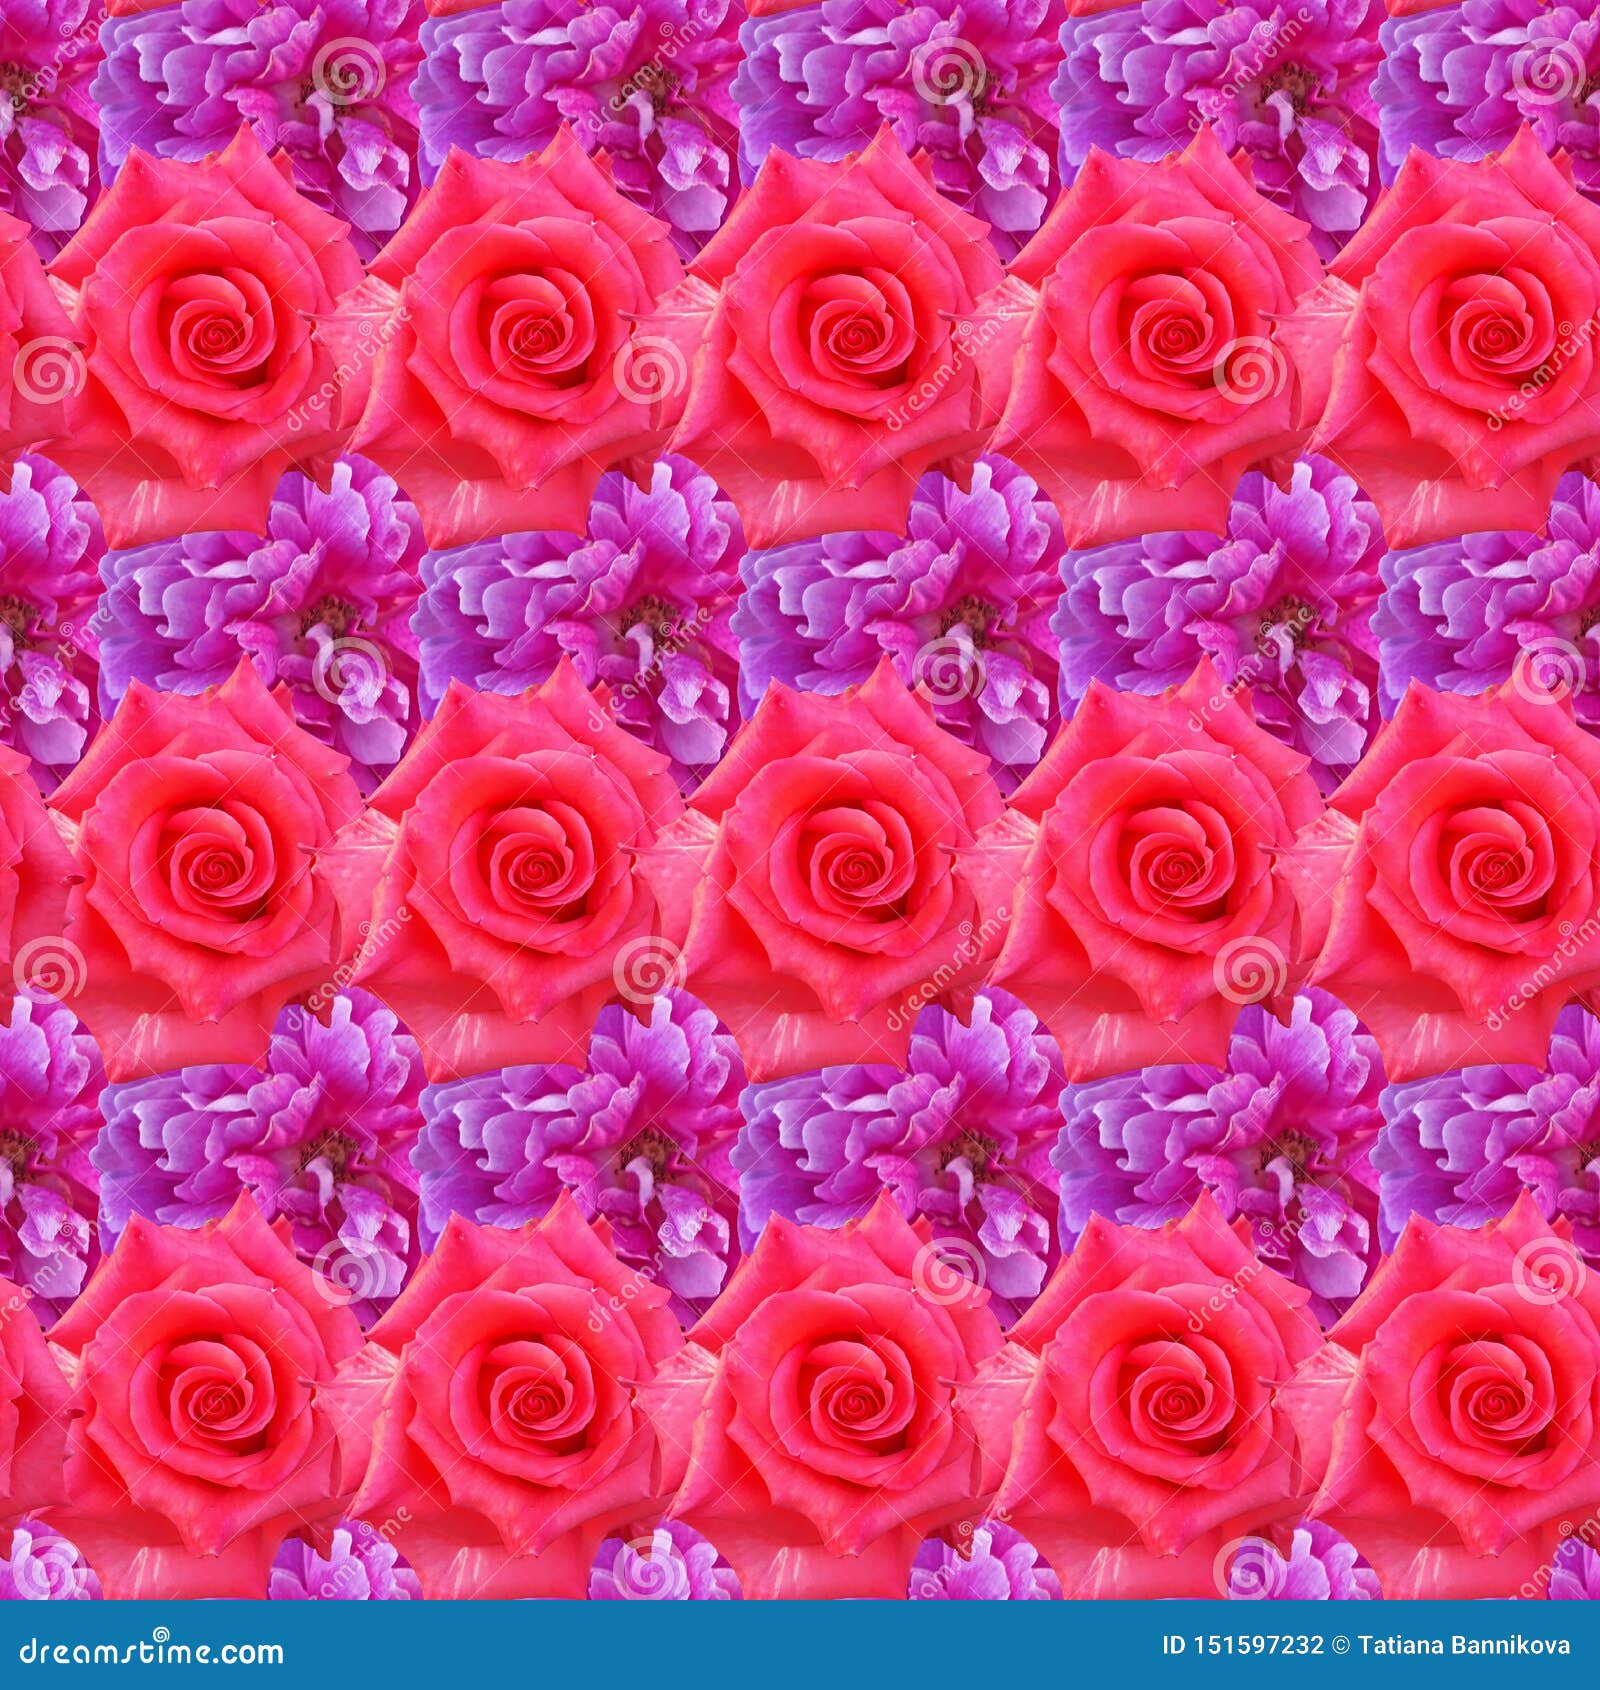 Nền hoa hồng đầy màu sắc đẹp đẽ: Nhìn thấy nền hoa hồng đầy màu sắc này, bạn sẽ thấy như đang tìm thấy thiên đường hoa. Hãy cùng tận hưởng vẻ đẹp tuyệt vời của hoa hồng với hình ảnh này nhé!